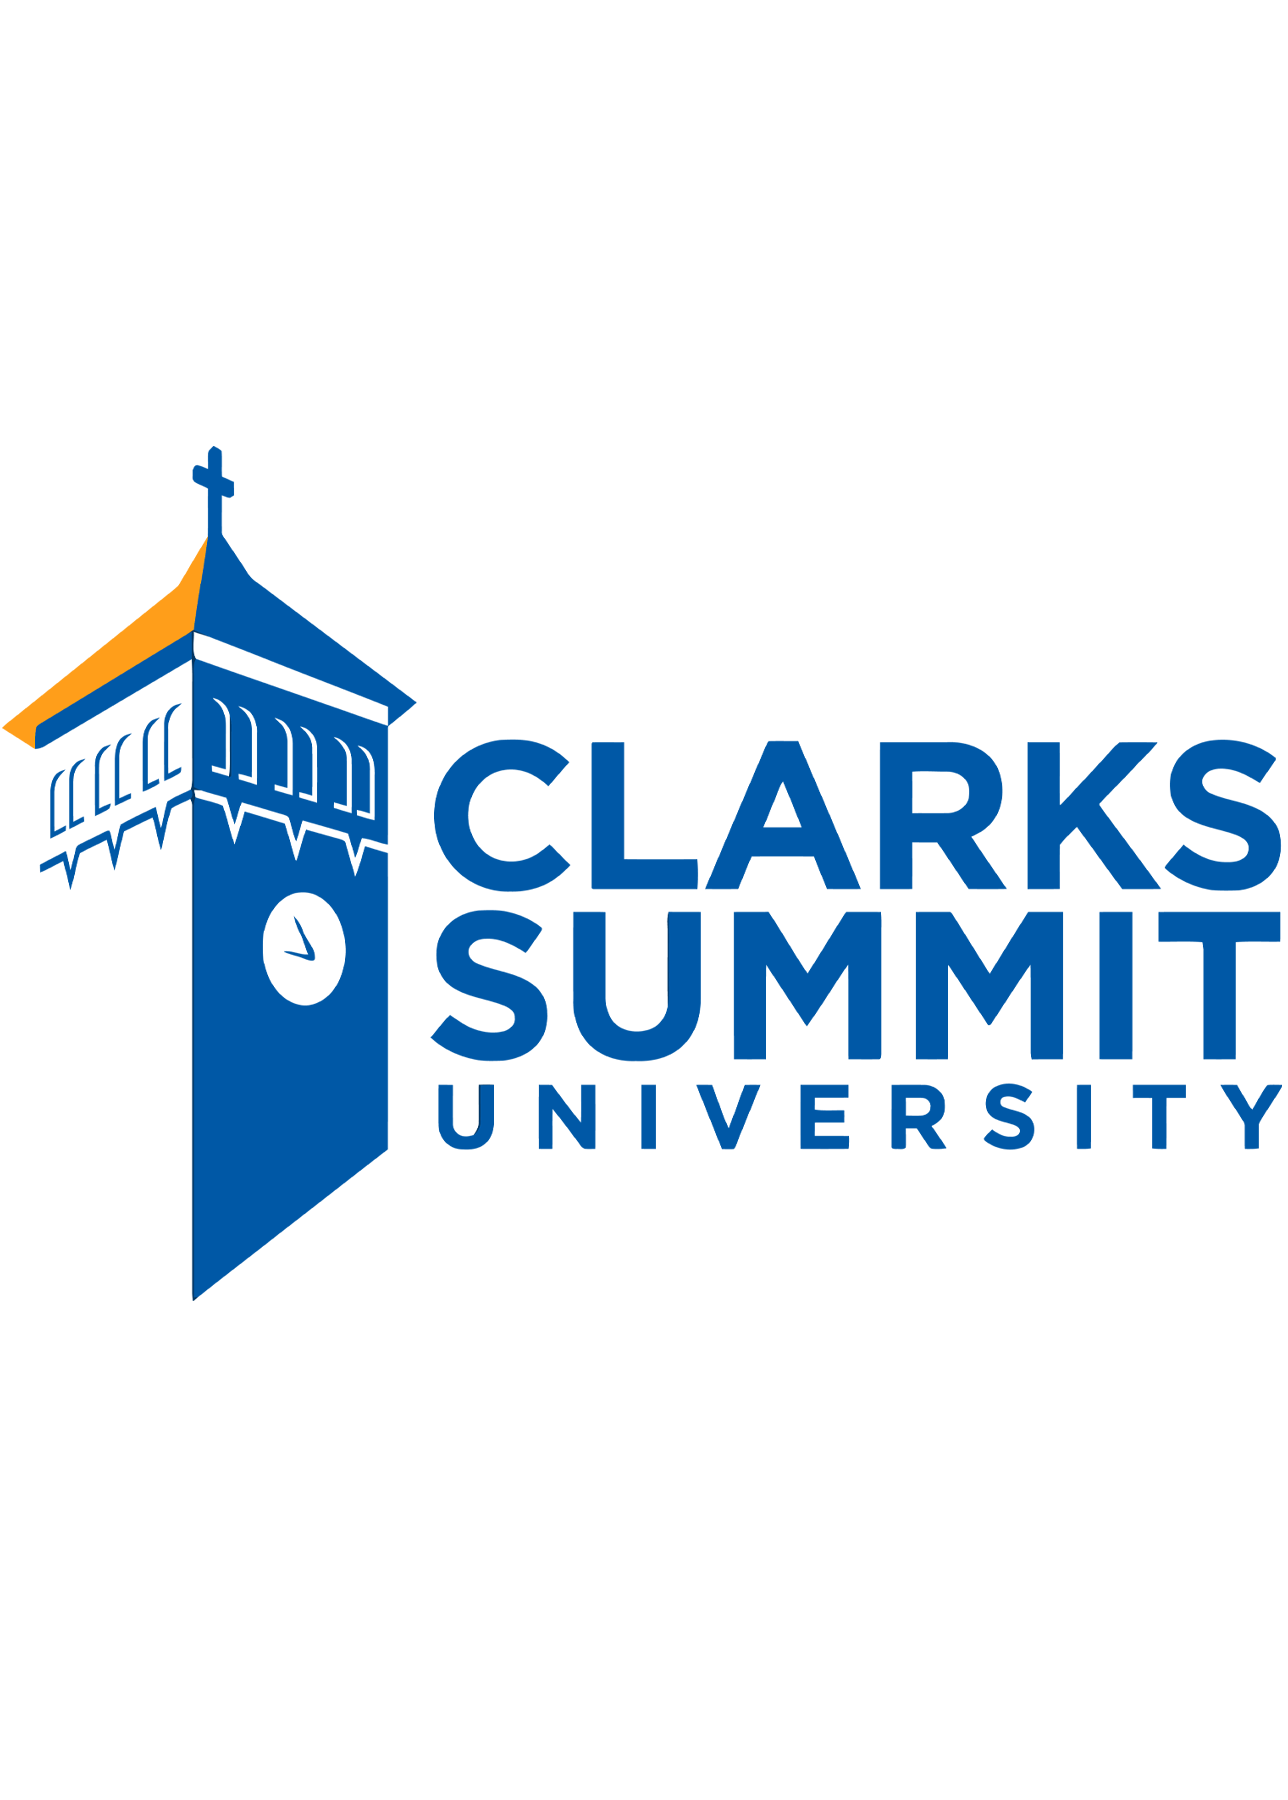 Clarks Summit University